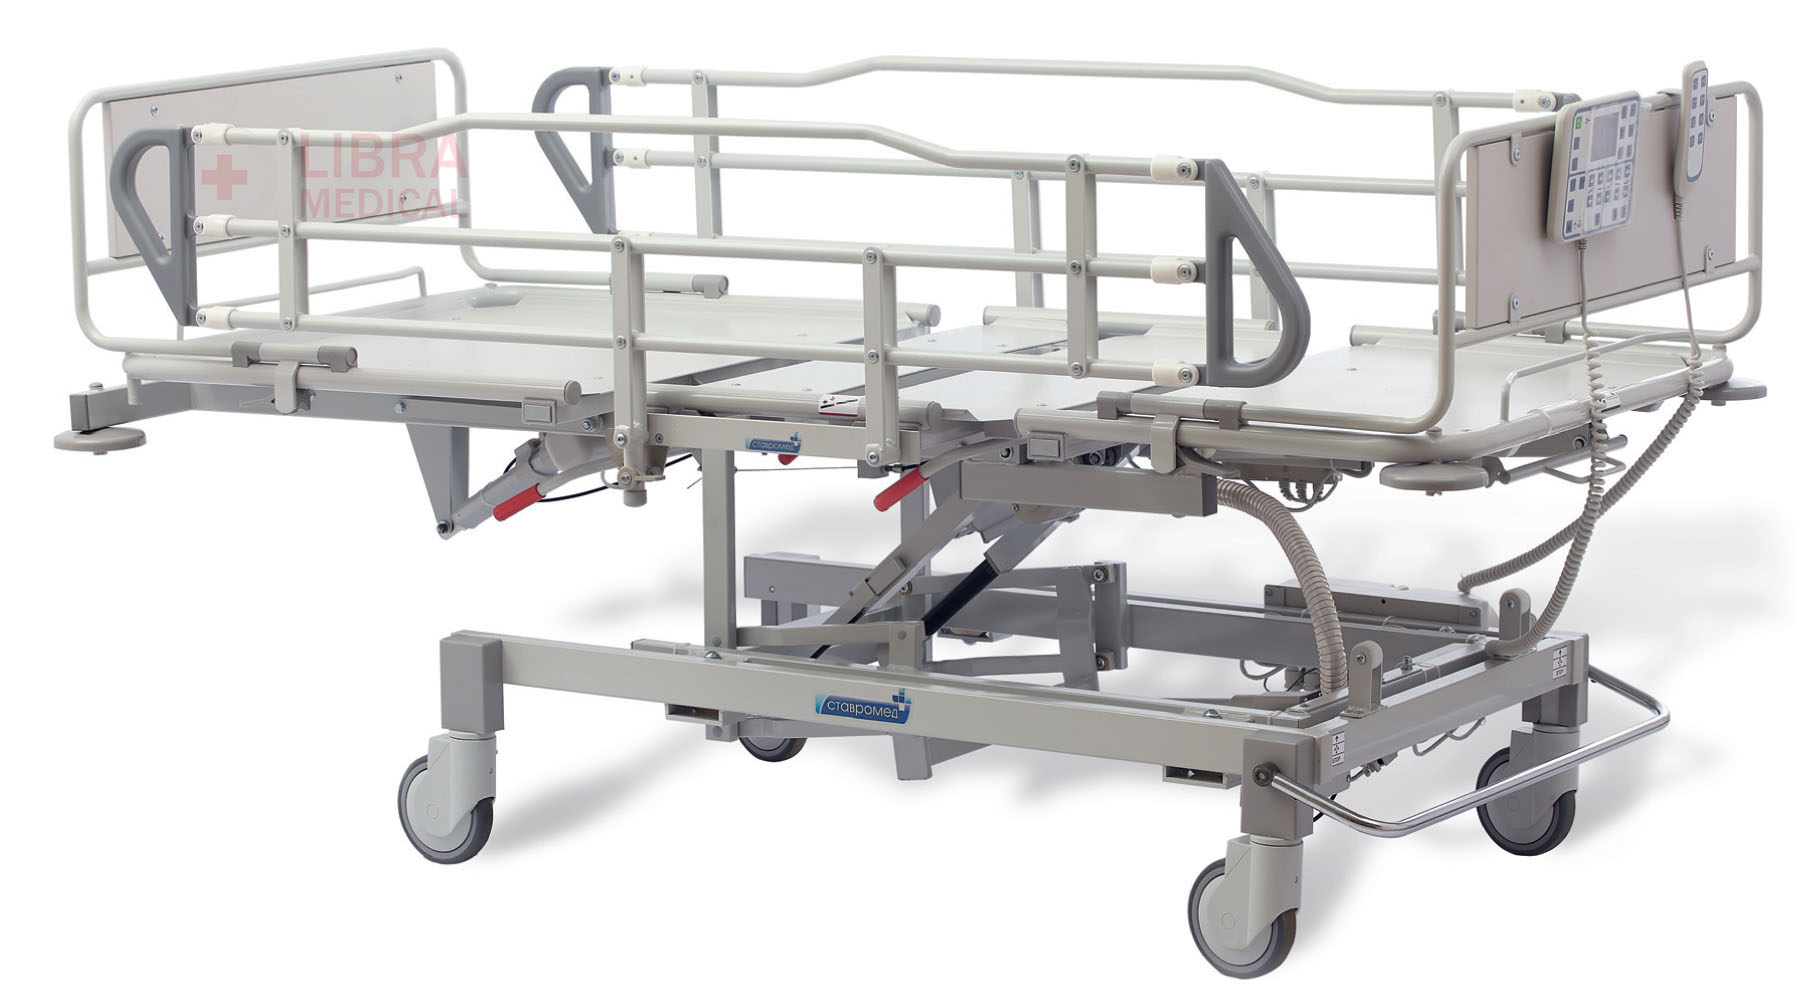 Кровать медицинская функциональная секционной конструкции КФ-210-ЭСВ